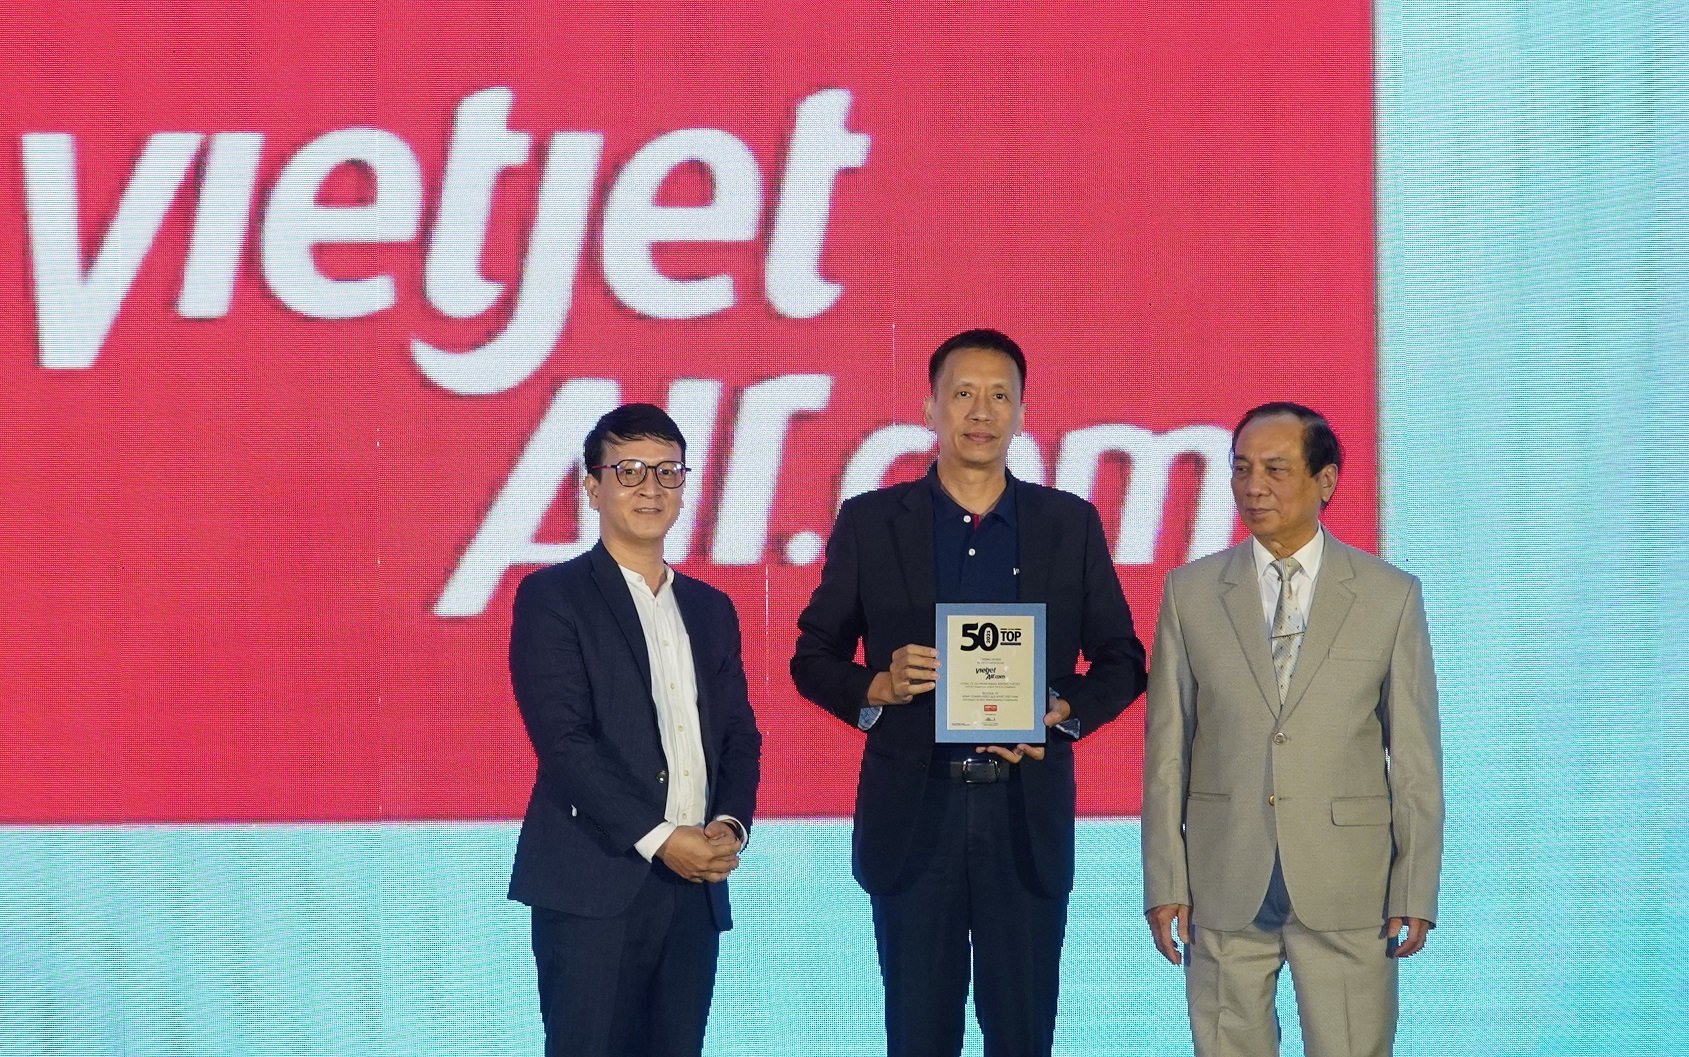  Bảng xếp hạng 50 Công ty kinh doanh hiệu quả nhất Việt Nam tôn vinh các công ty xứng đáng là niềm tự hào cho đất nước